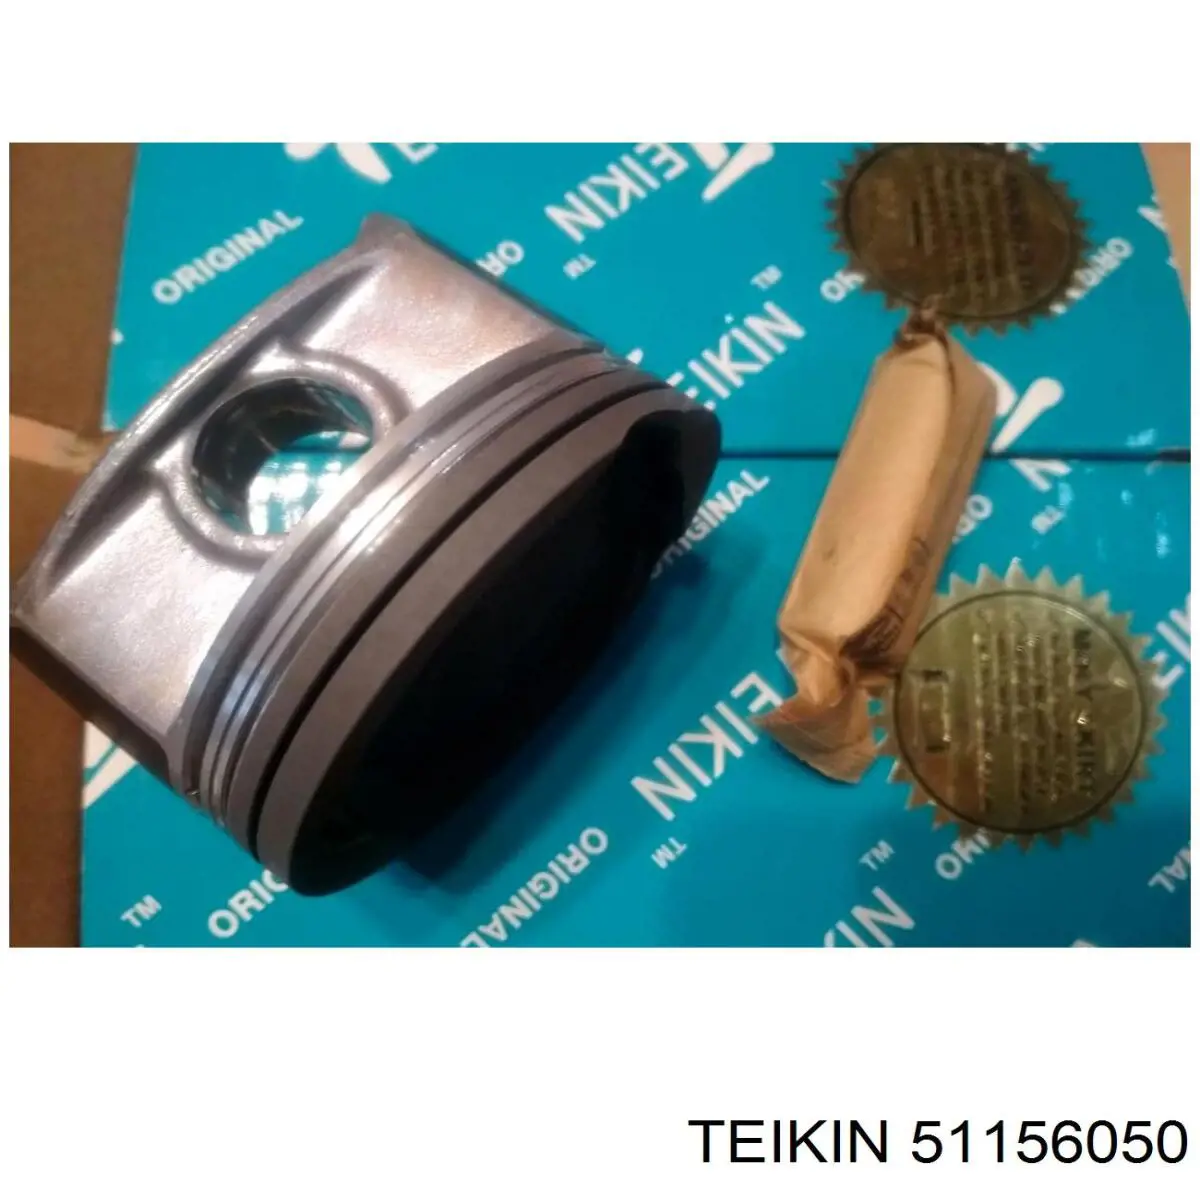 51156050 Teikin juego de piston para motor, 2da reparación (+ 0,50)